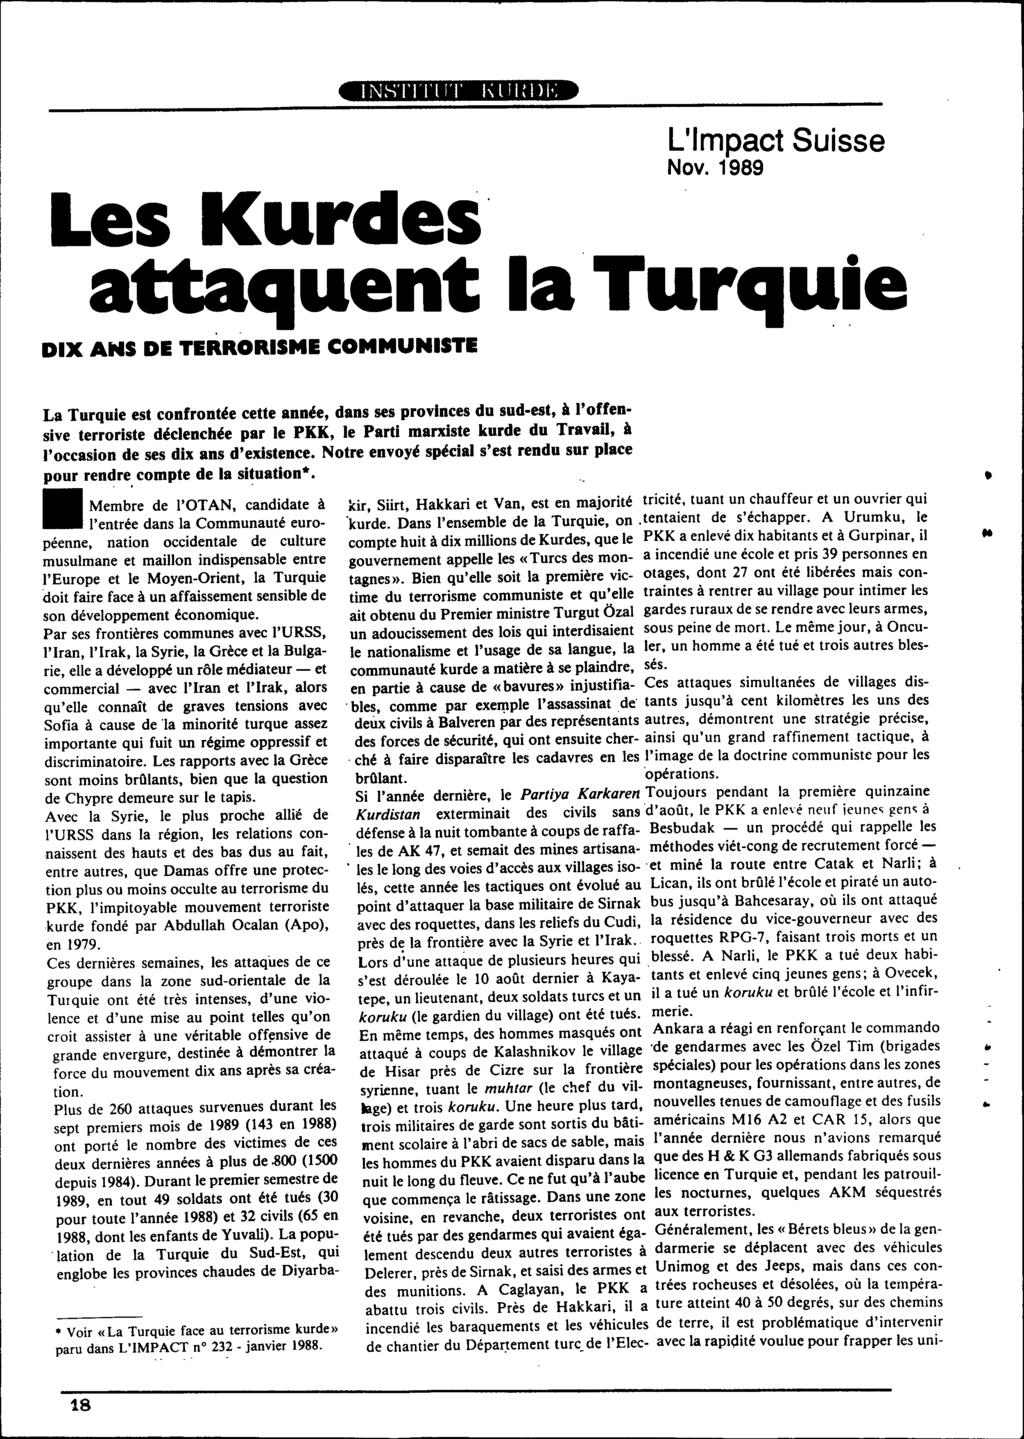 Les Kurdes attaquent L'Impact Suisse Nov. 1989 la.